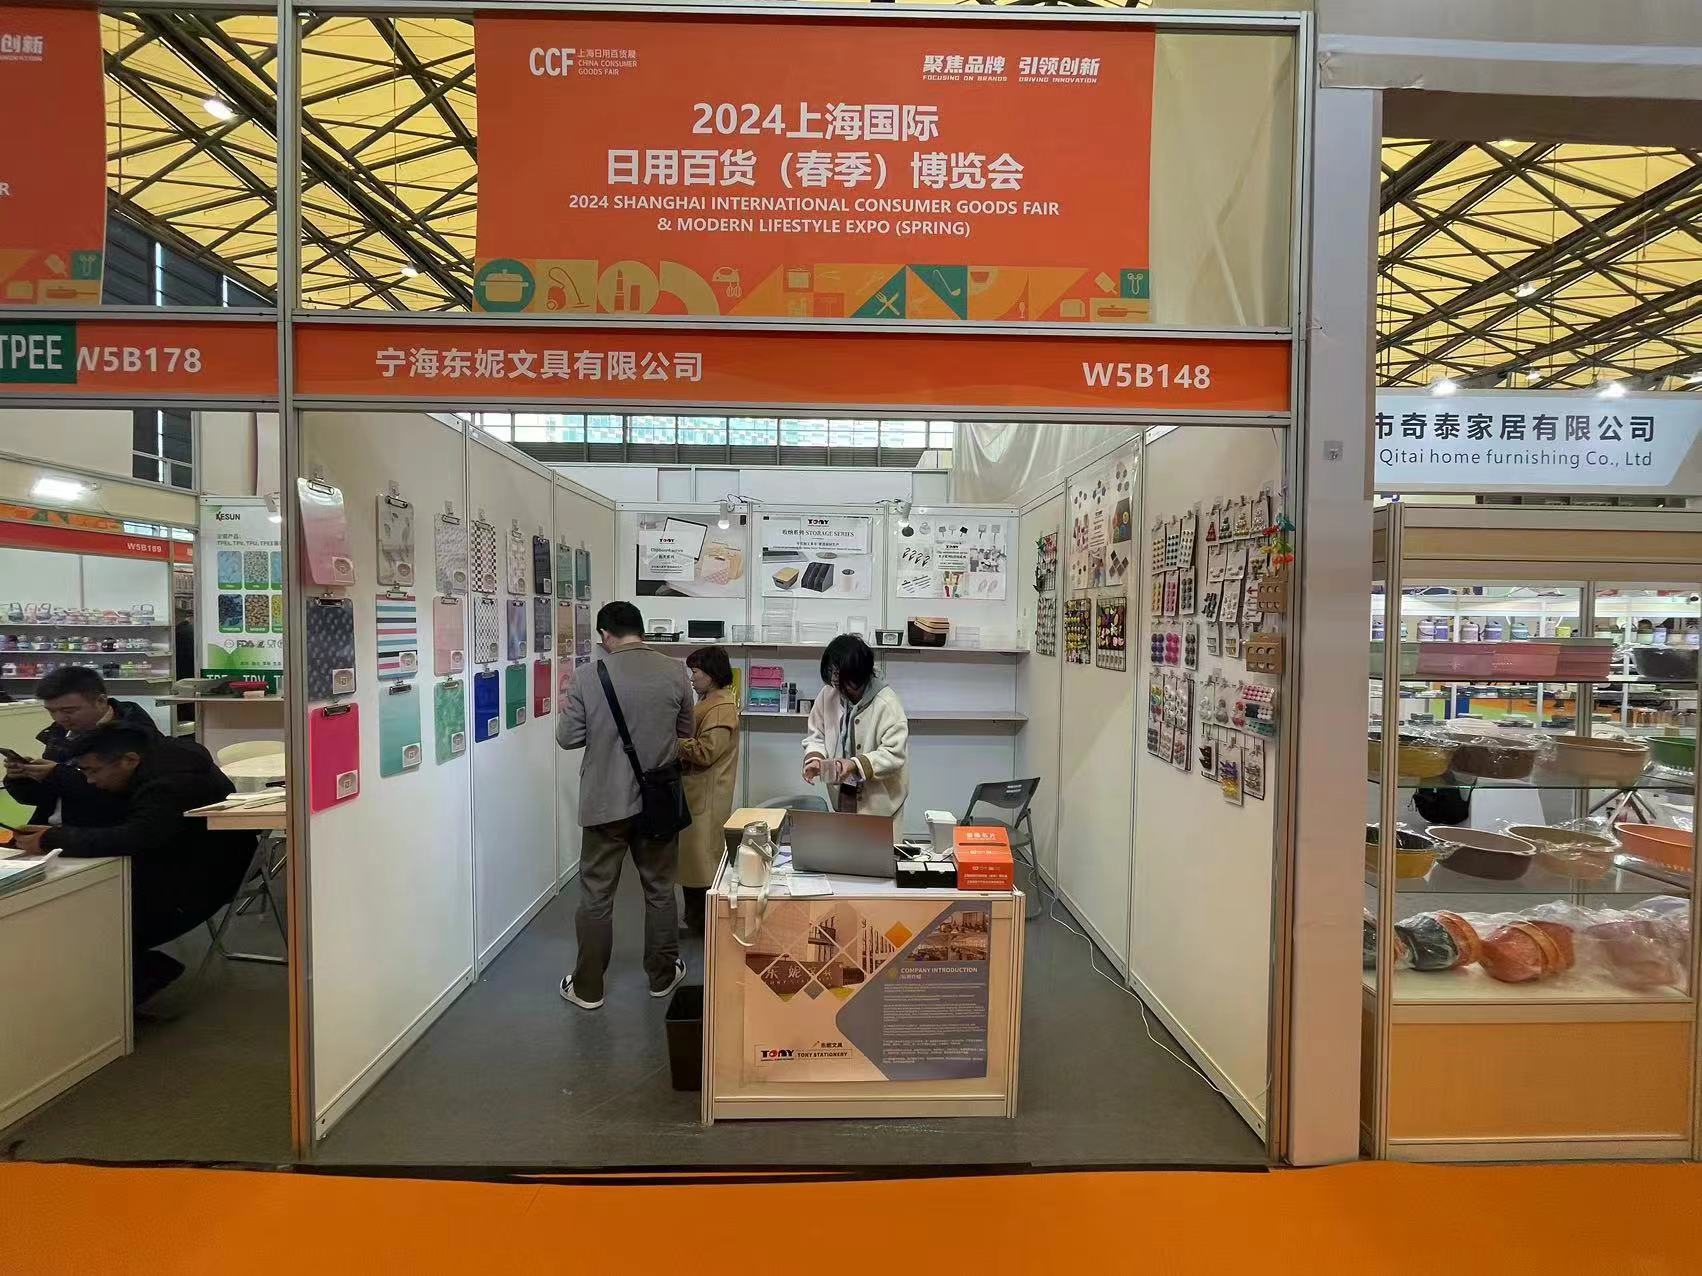 トニーステーショナリー、2024年上海国際消費財博覧会に出展